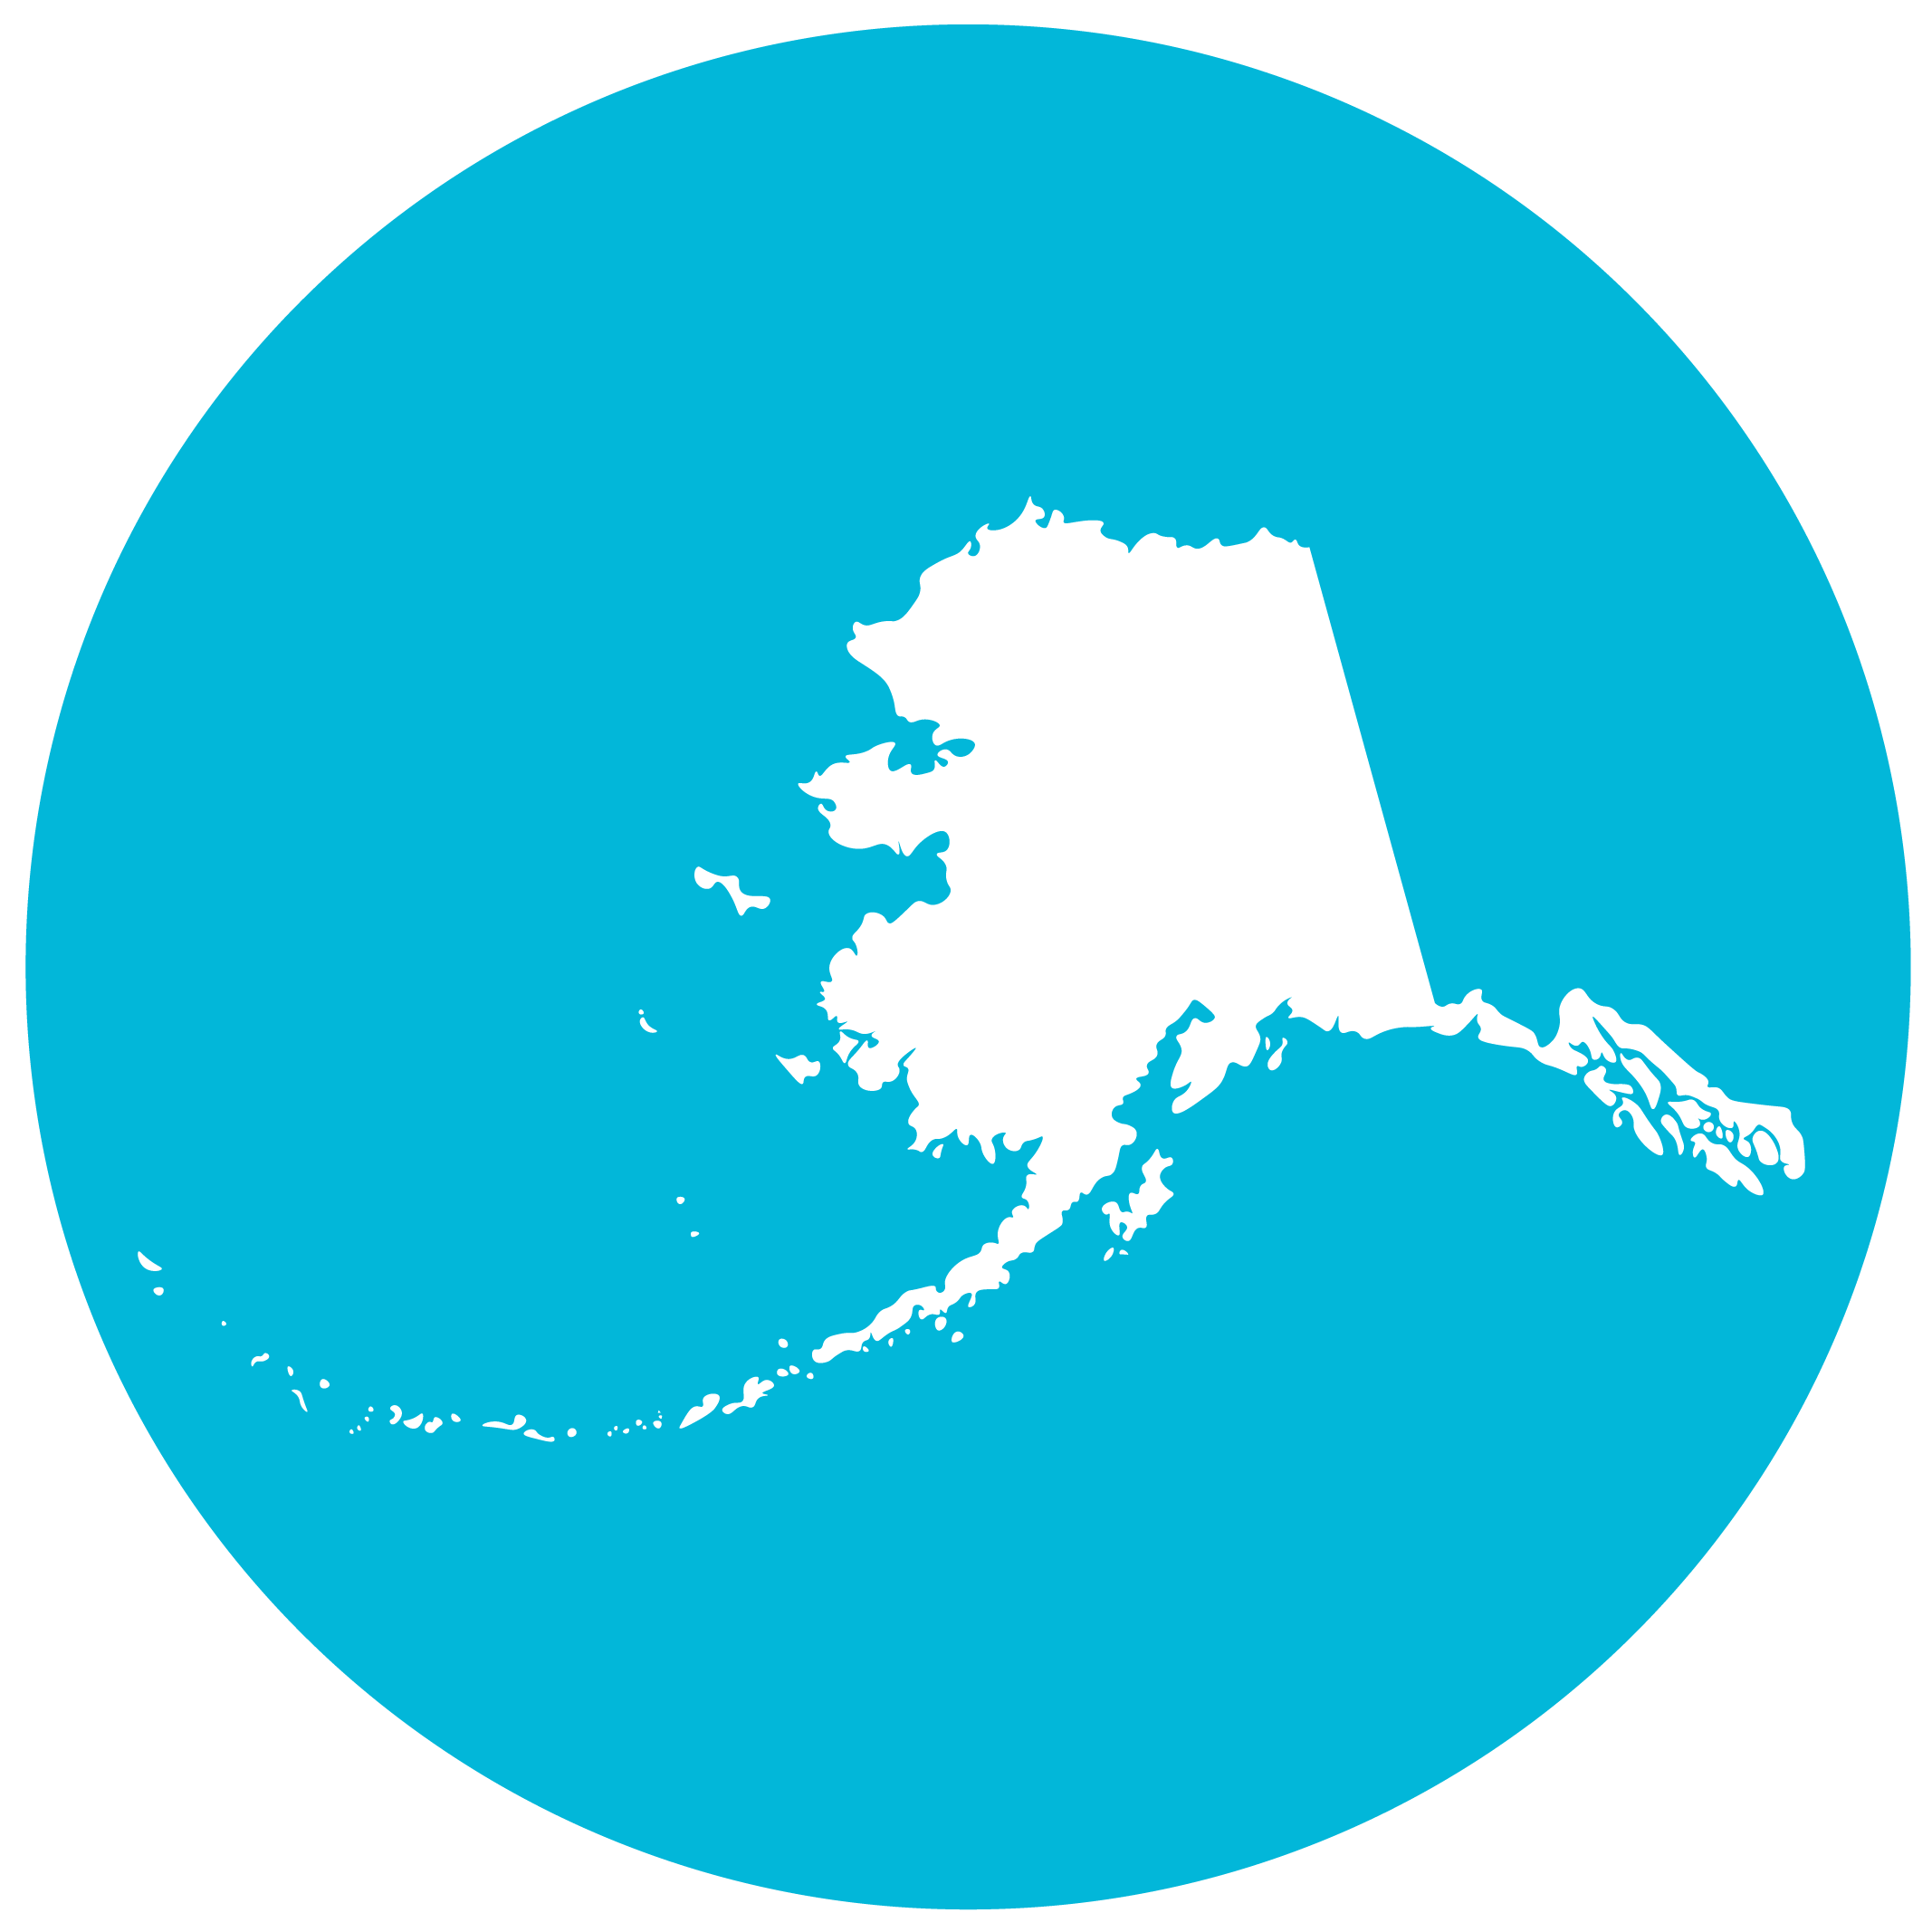 Alaska Icon